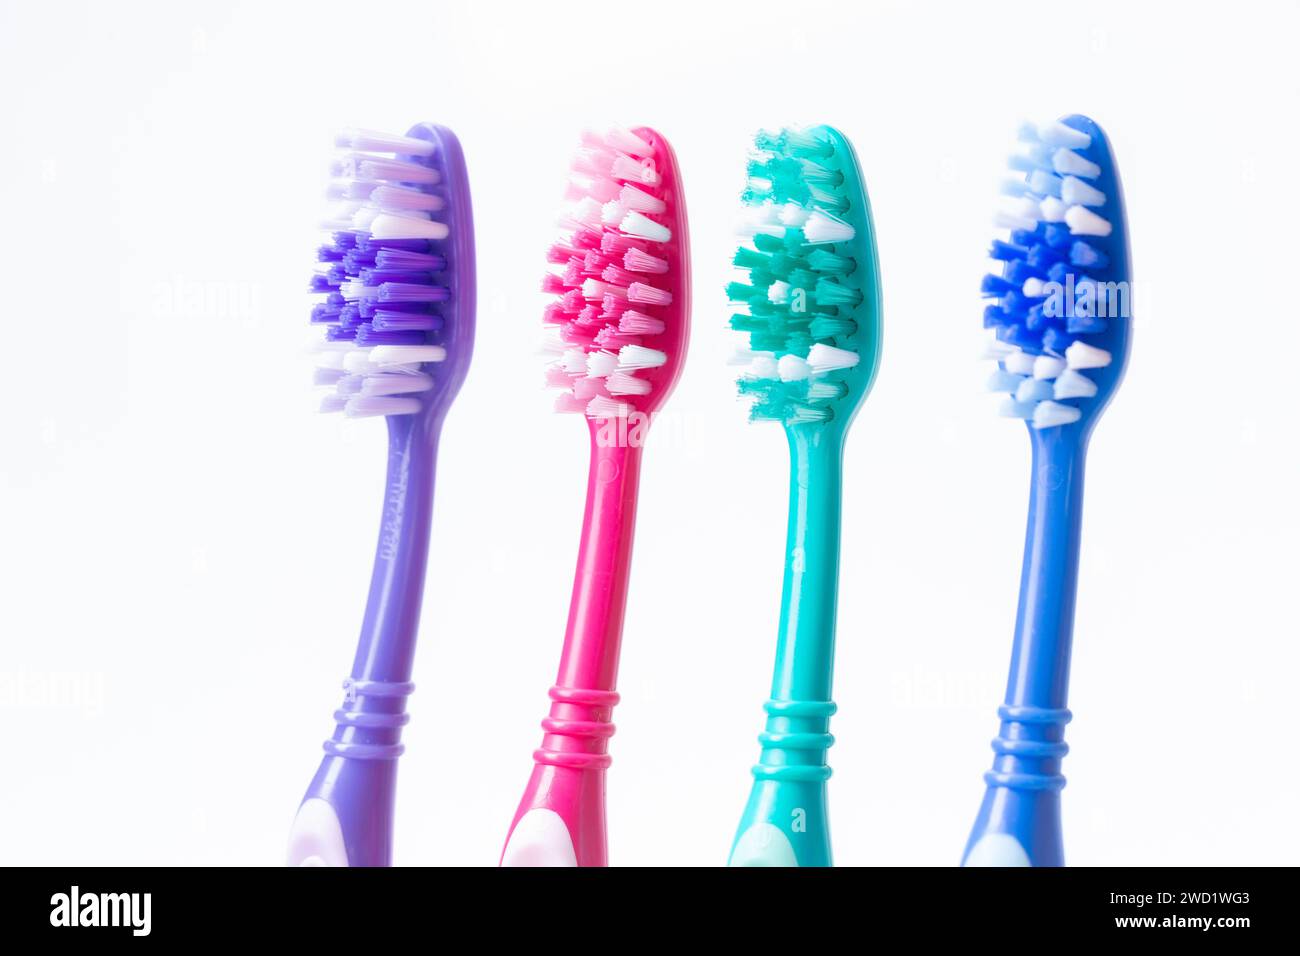 Quatre brosses à dents en plastique colorées Banque D'Images